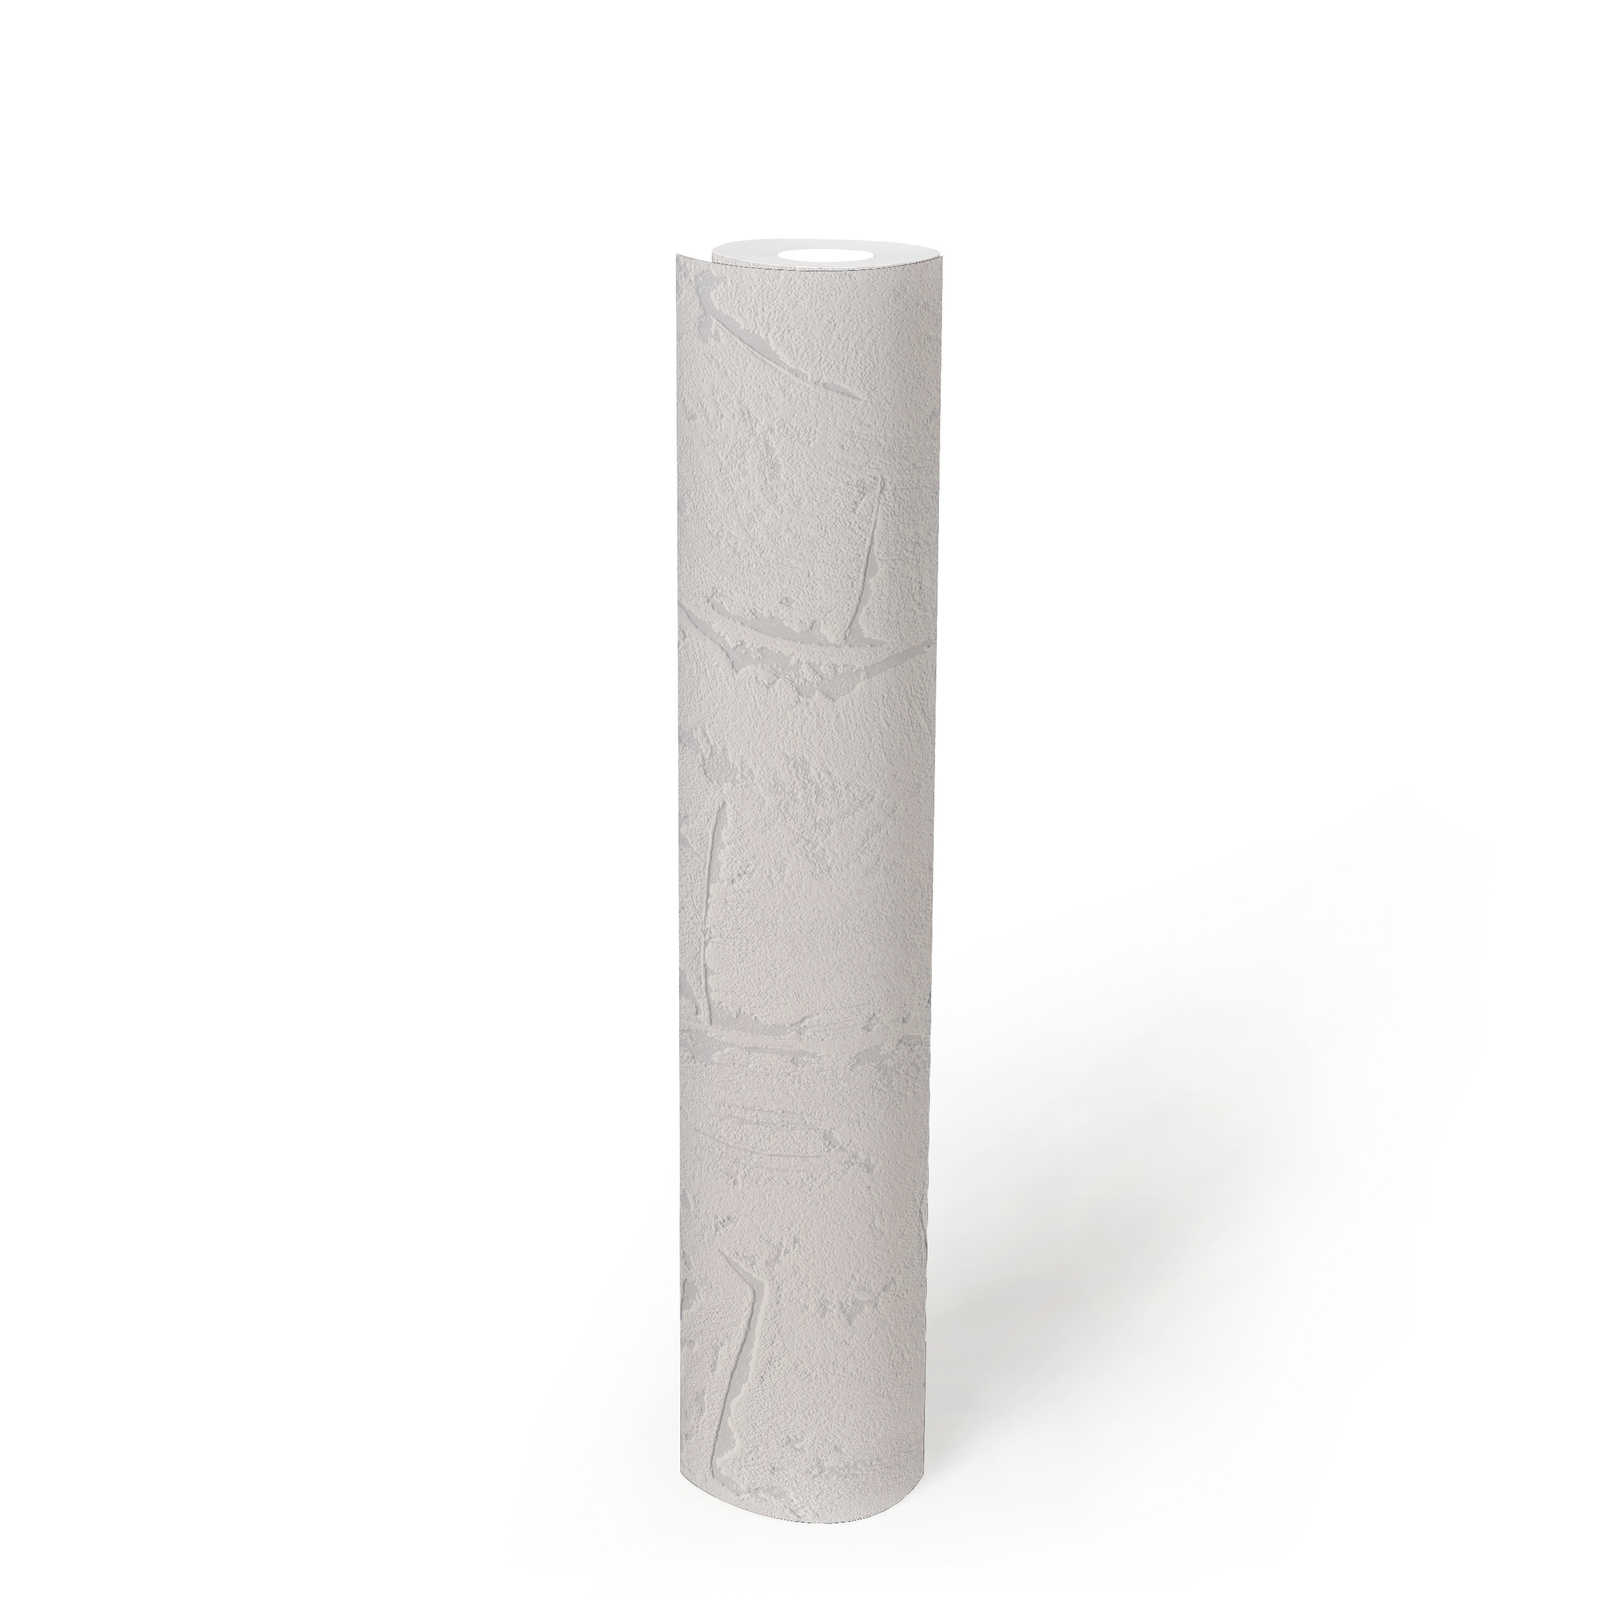             Papel pintado blanco gris con superficie de yeso y efecto 3D - Gris, Blanco
        